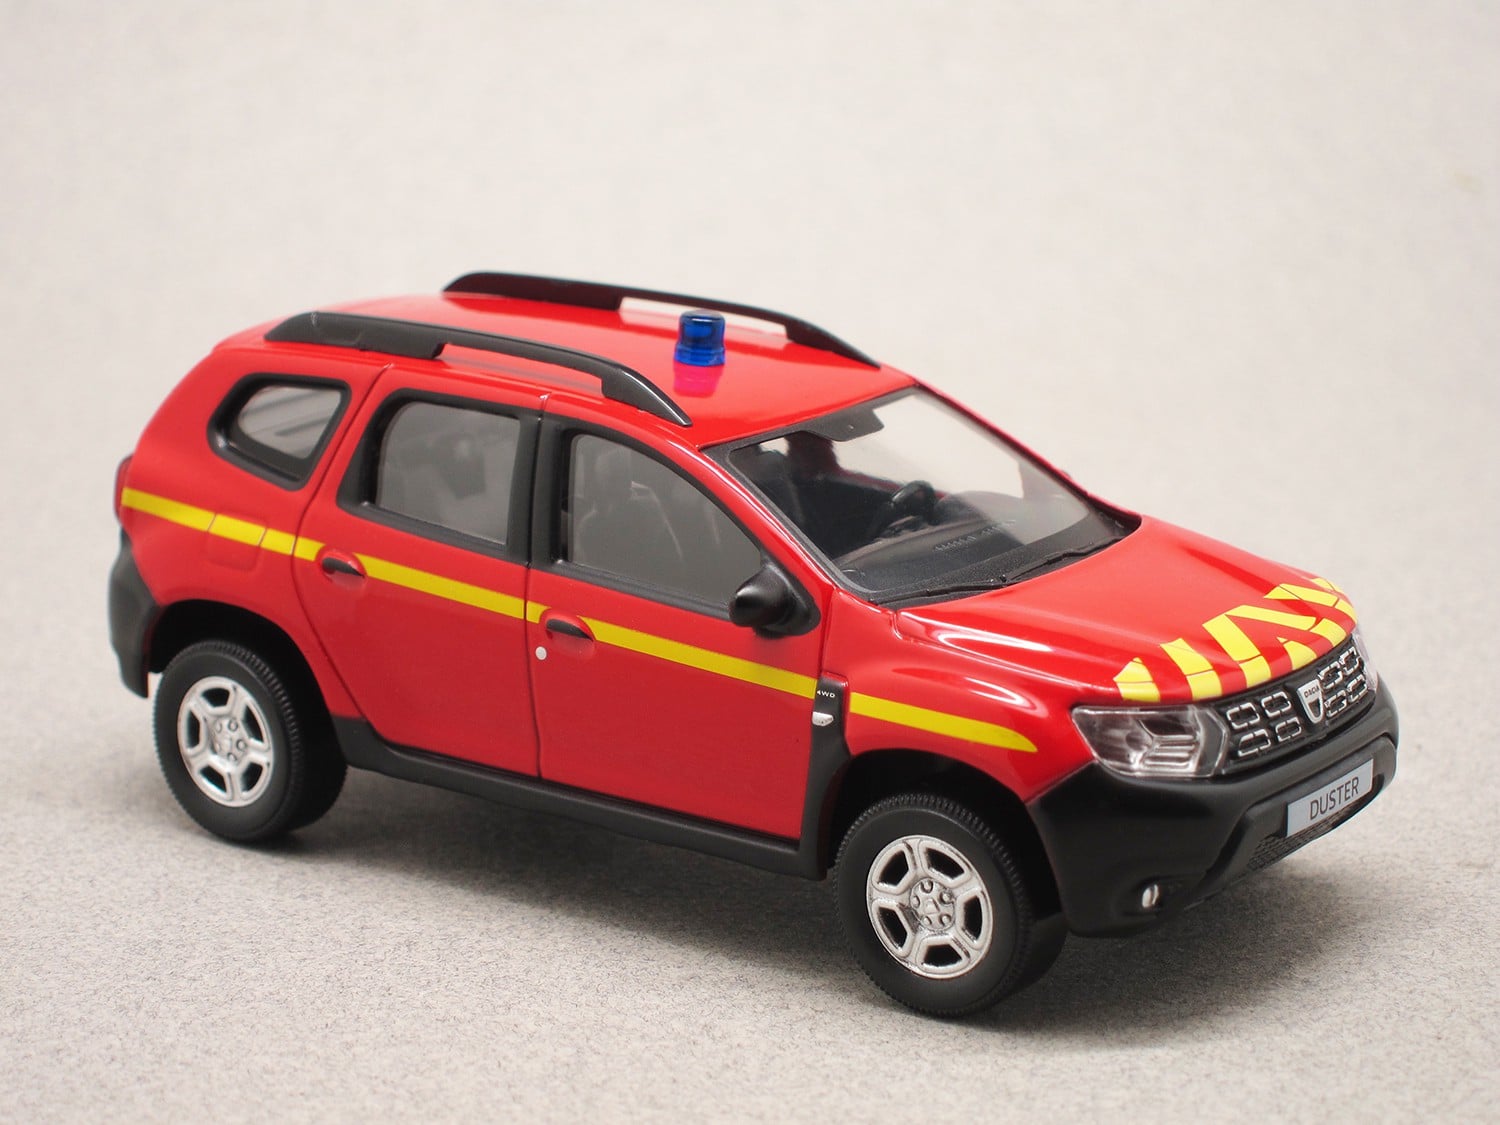 Dacia Duster 2020 fire rescue (Norev) 1:43